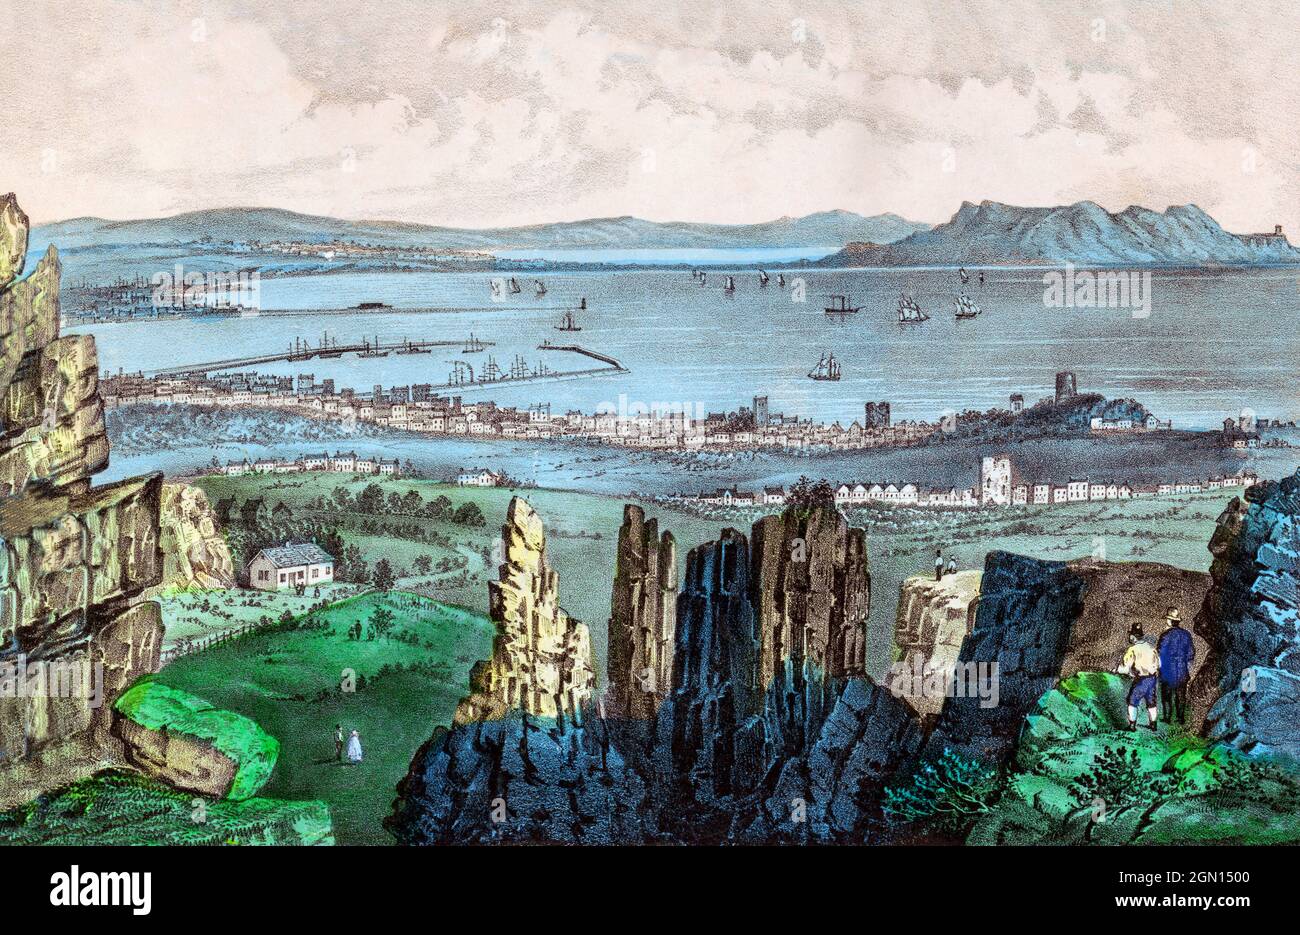 Ein Blick aus dem 19. Jahrhundert auf Dublin City und Hafen, Howth und Dublin Bay vom Quarry in Kingstown, benannt nach dem Besuch von König George IV. Im Jahr 1821. Es wurde Dún in 1920 Laoghaire umbenannt. Erstellt um 1880 von einem anonymen Künstler. Stockfoto